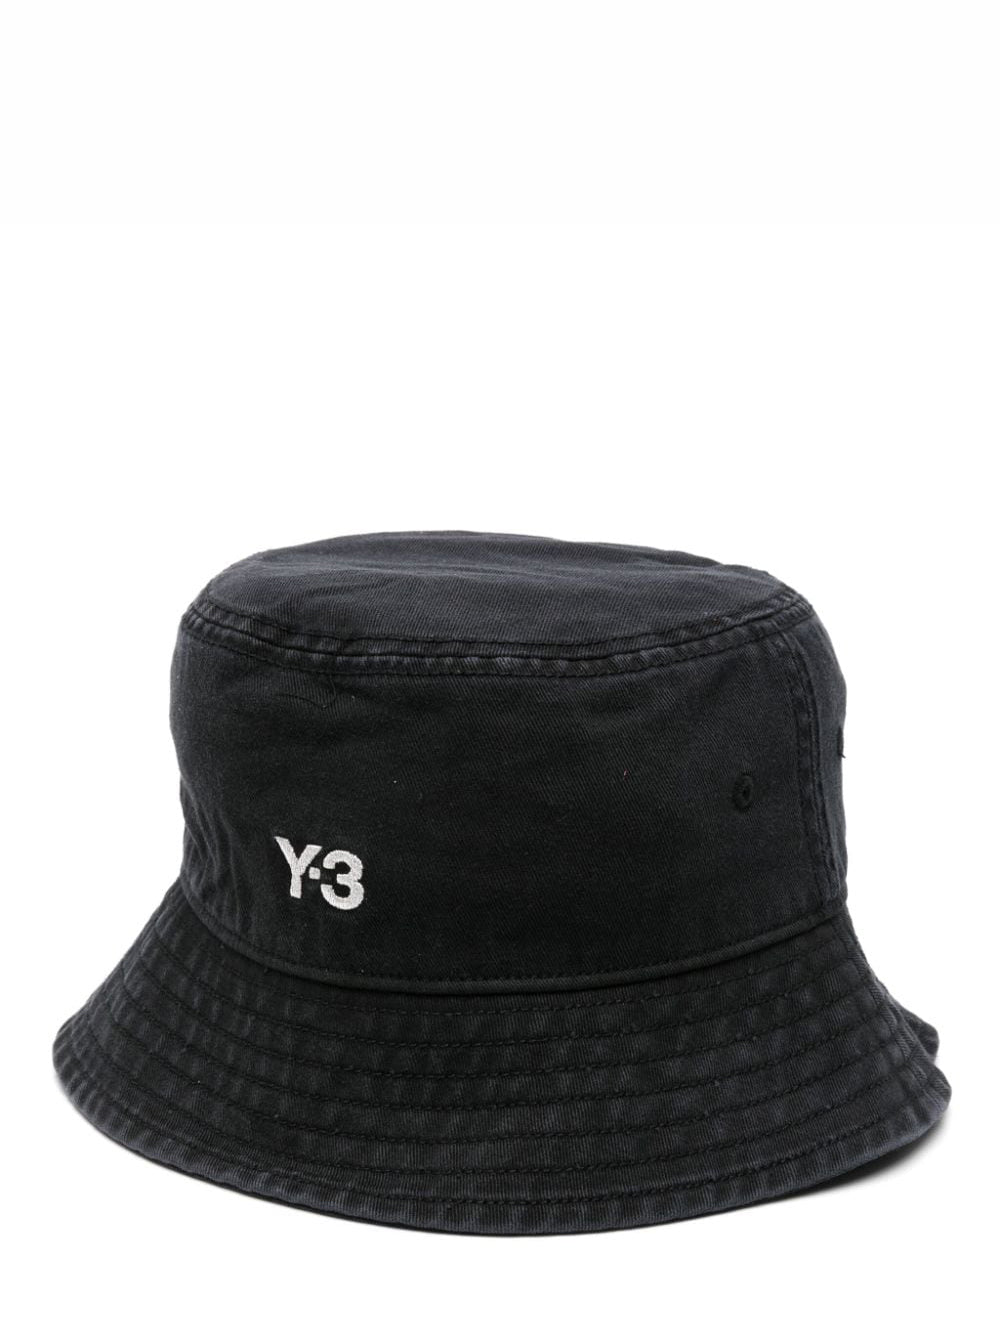 Y-3 Bucket Hat Black